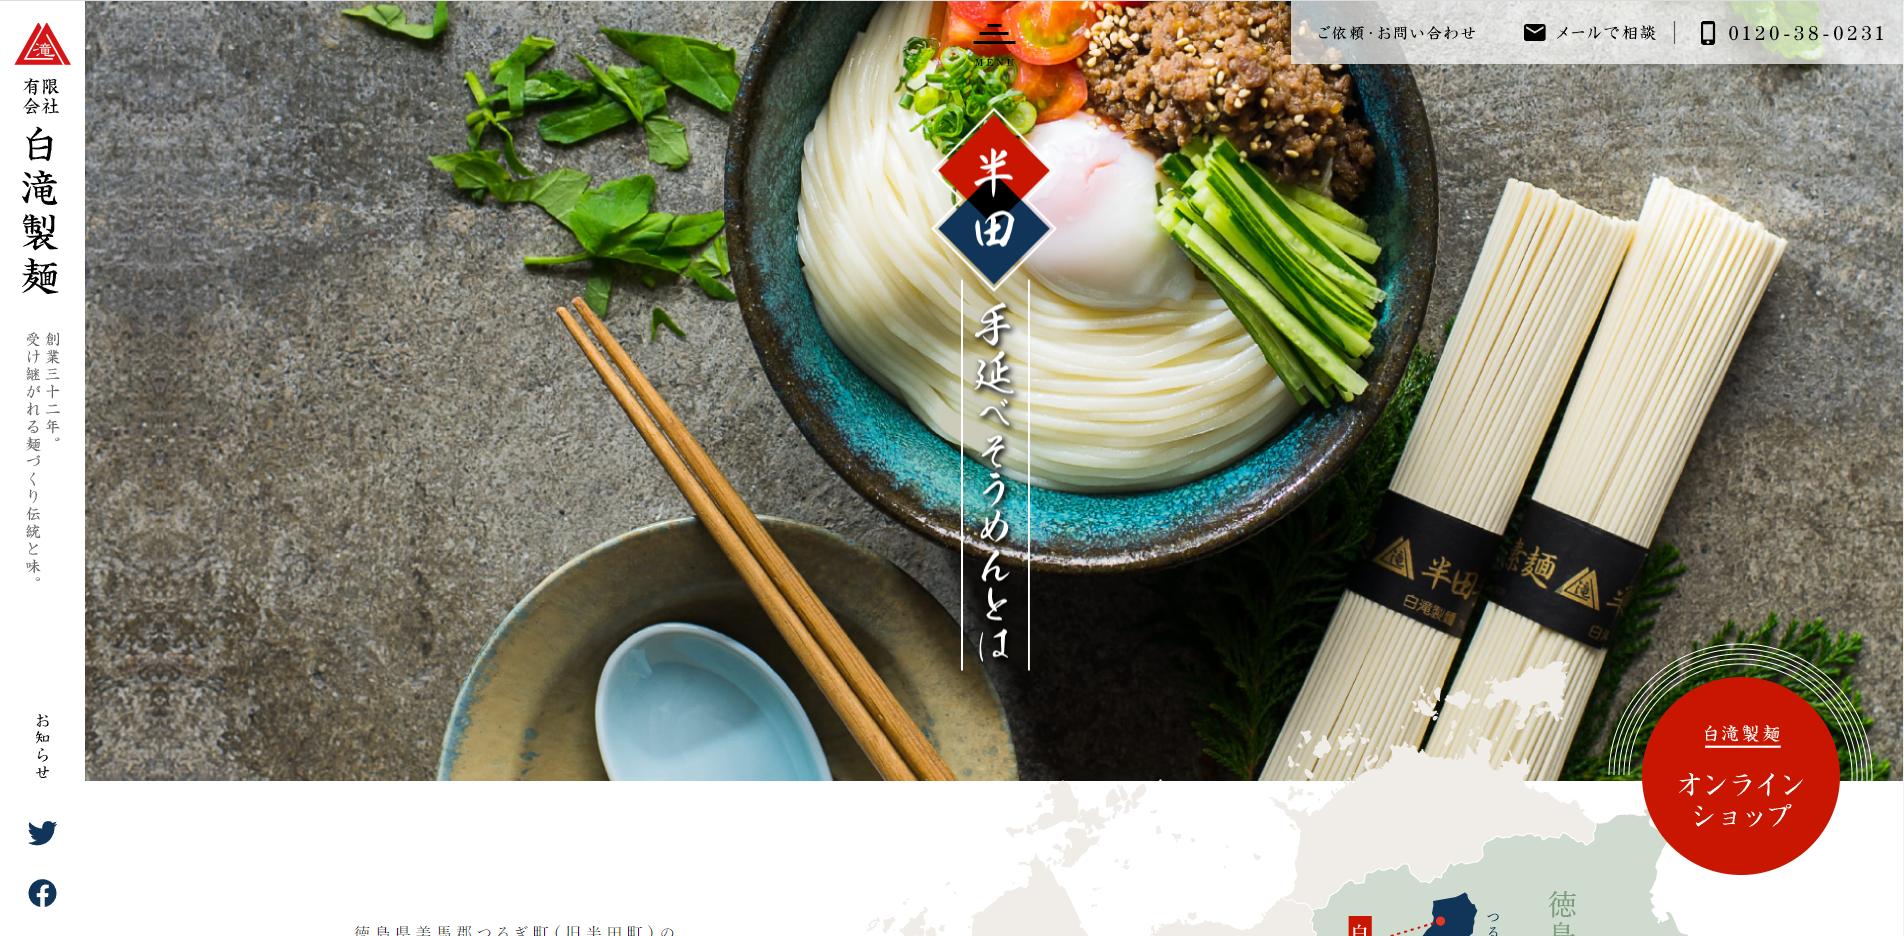 「半田そうめん白滝製麺」様サイトのページ画像1